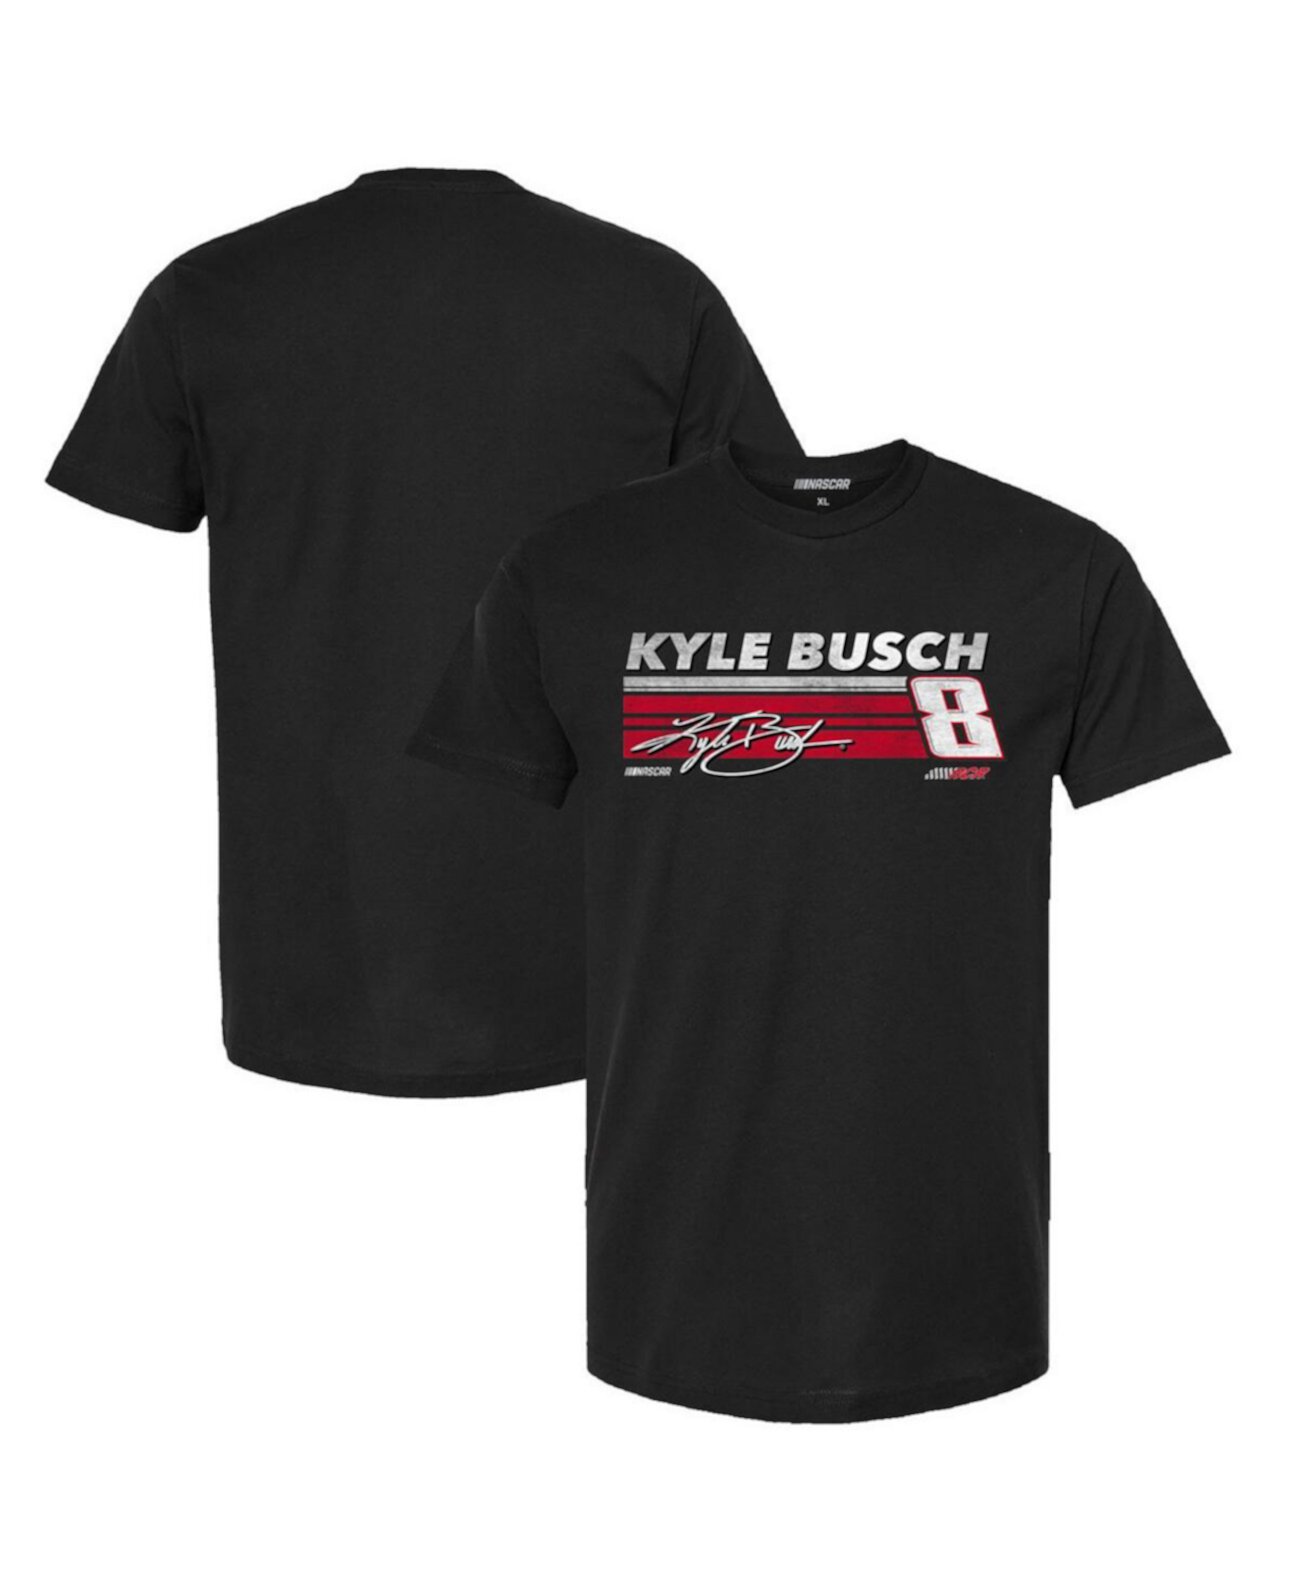 Мужская черная футболка Kyle Busch Hot Lap Richard Childress Racing Team Collection